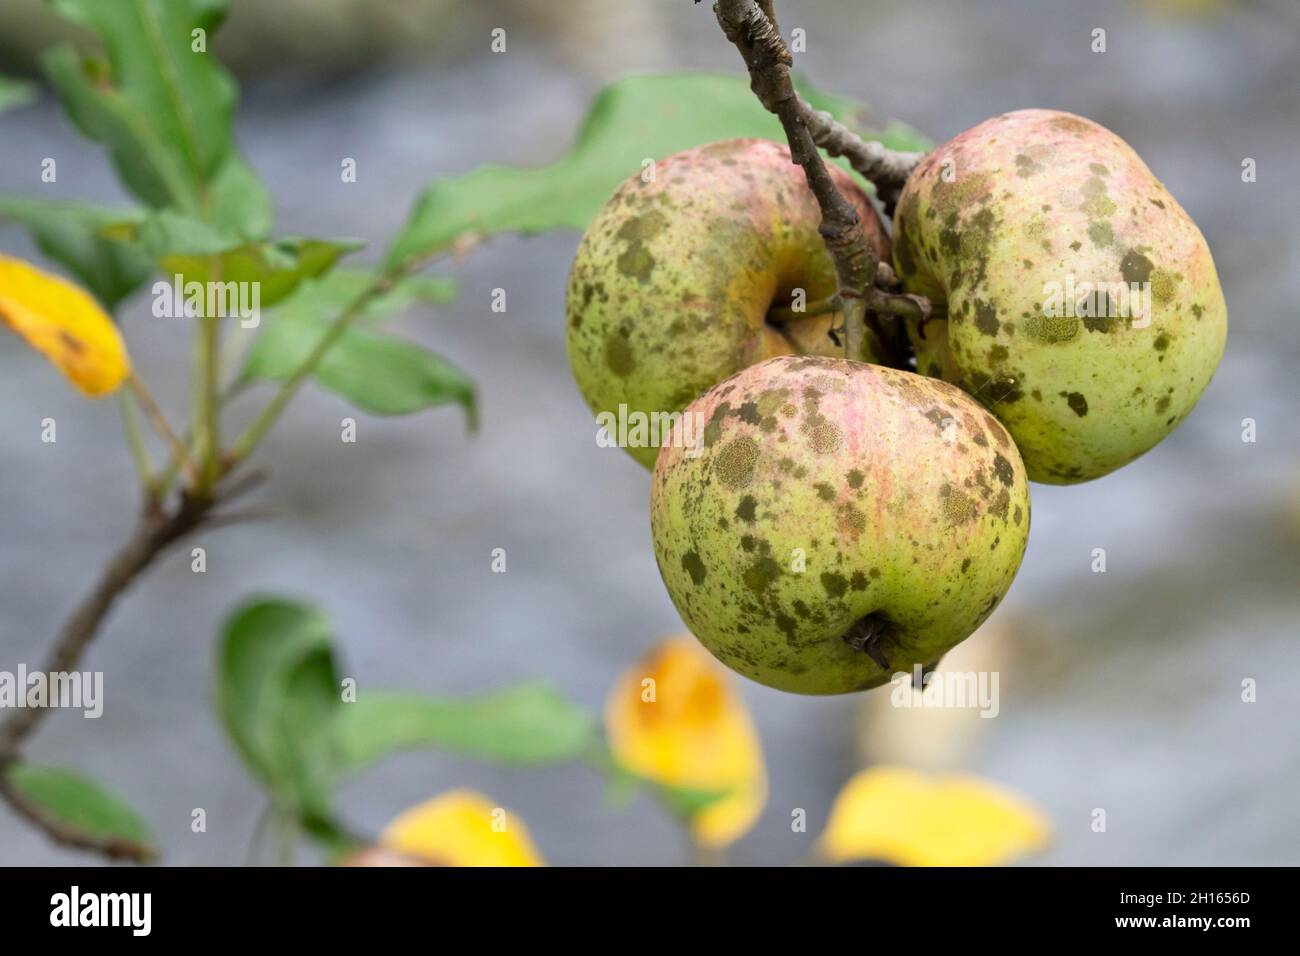 Sooty Blotch and Flyspeck on Apples (SBFS), (Schizothyrium pomi) Stock Photo